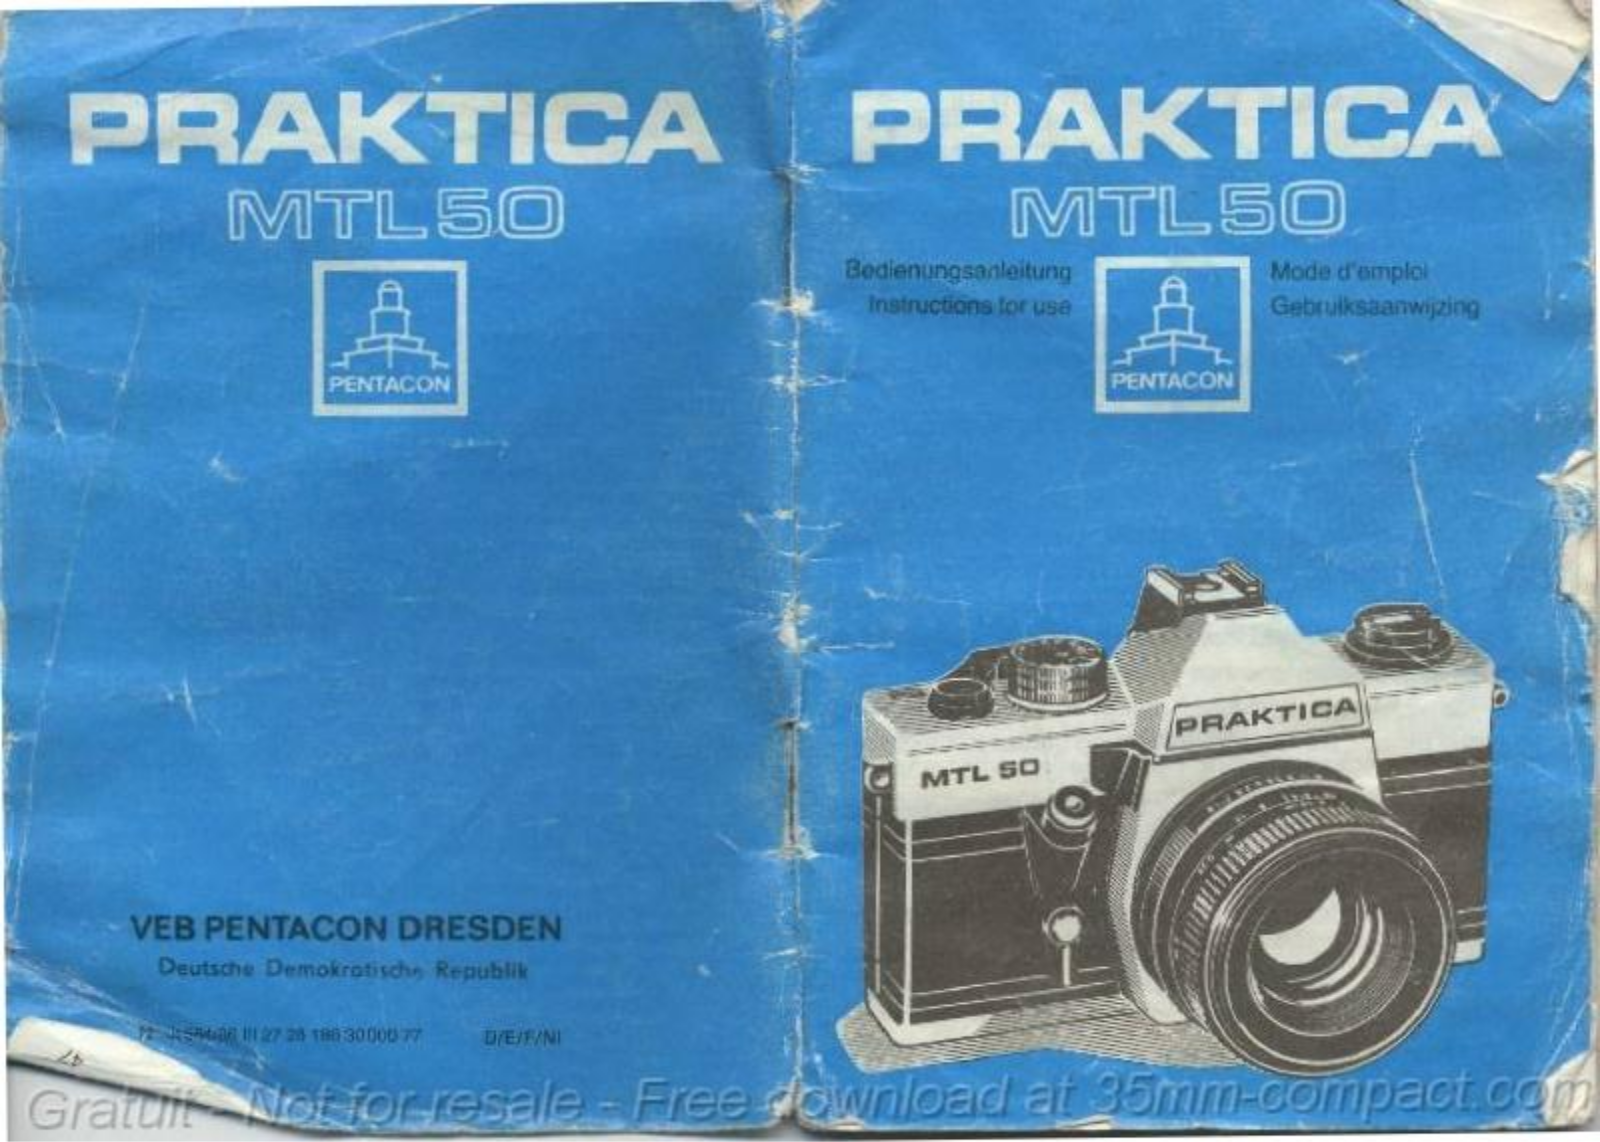 PRAKTICA MTL 50 User Manual